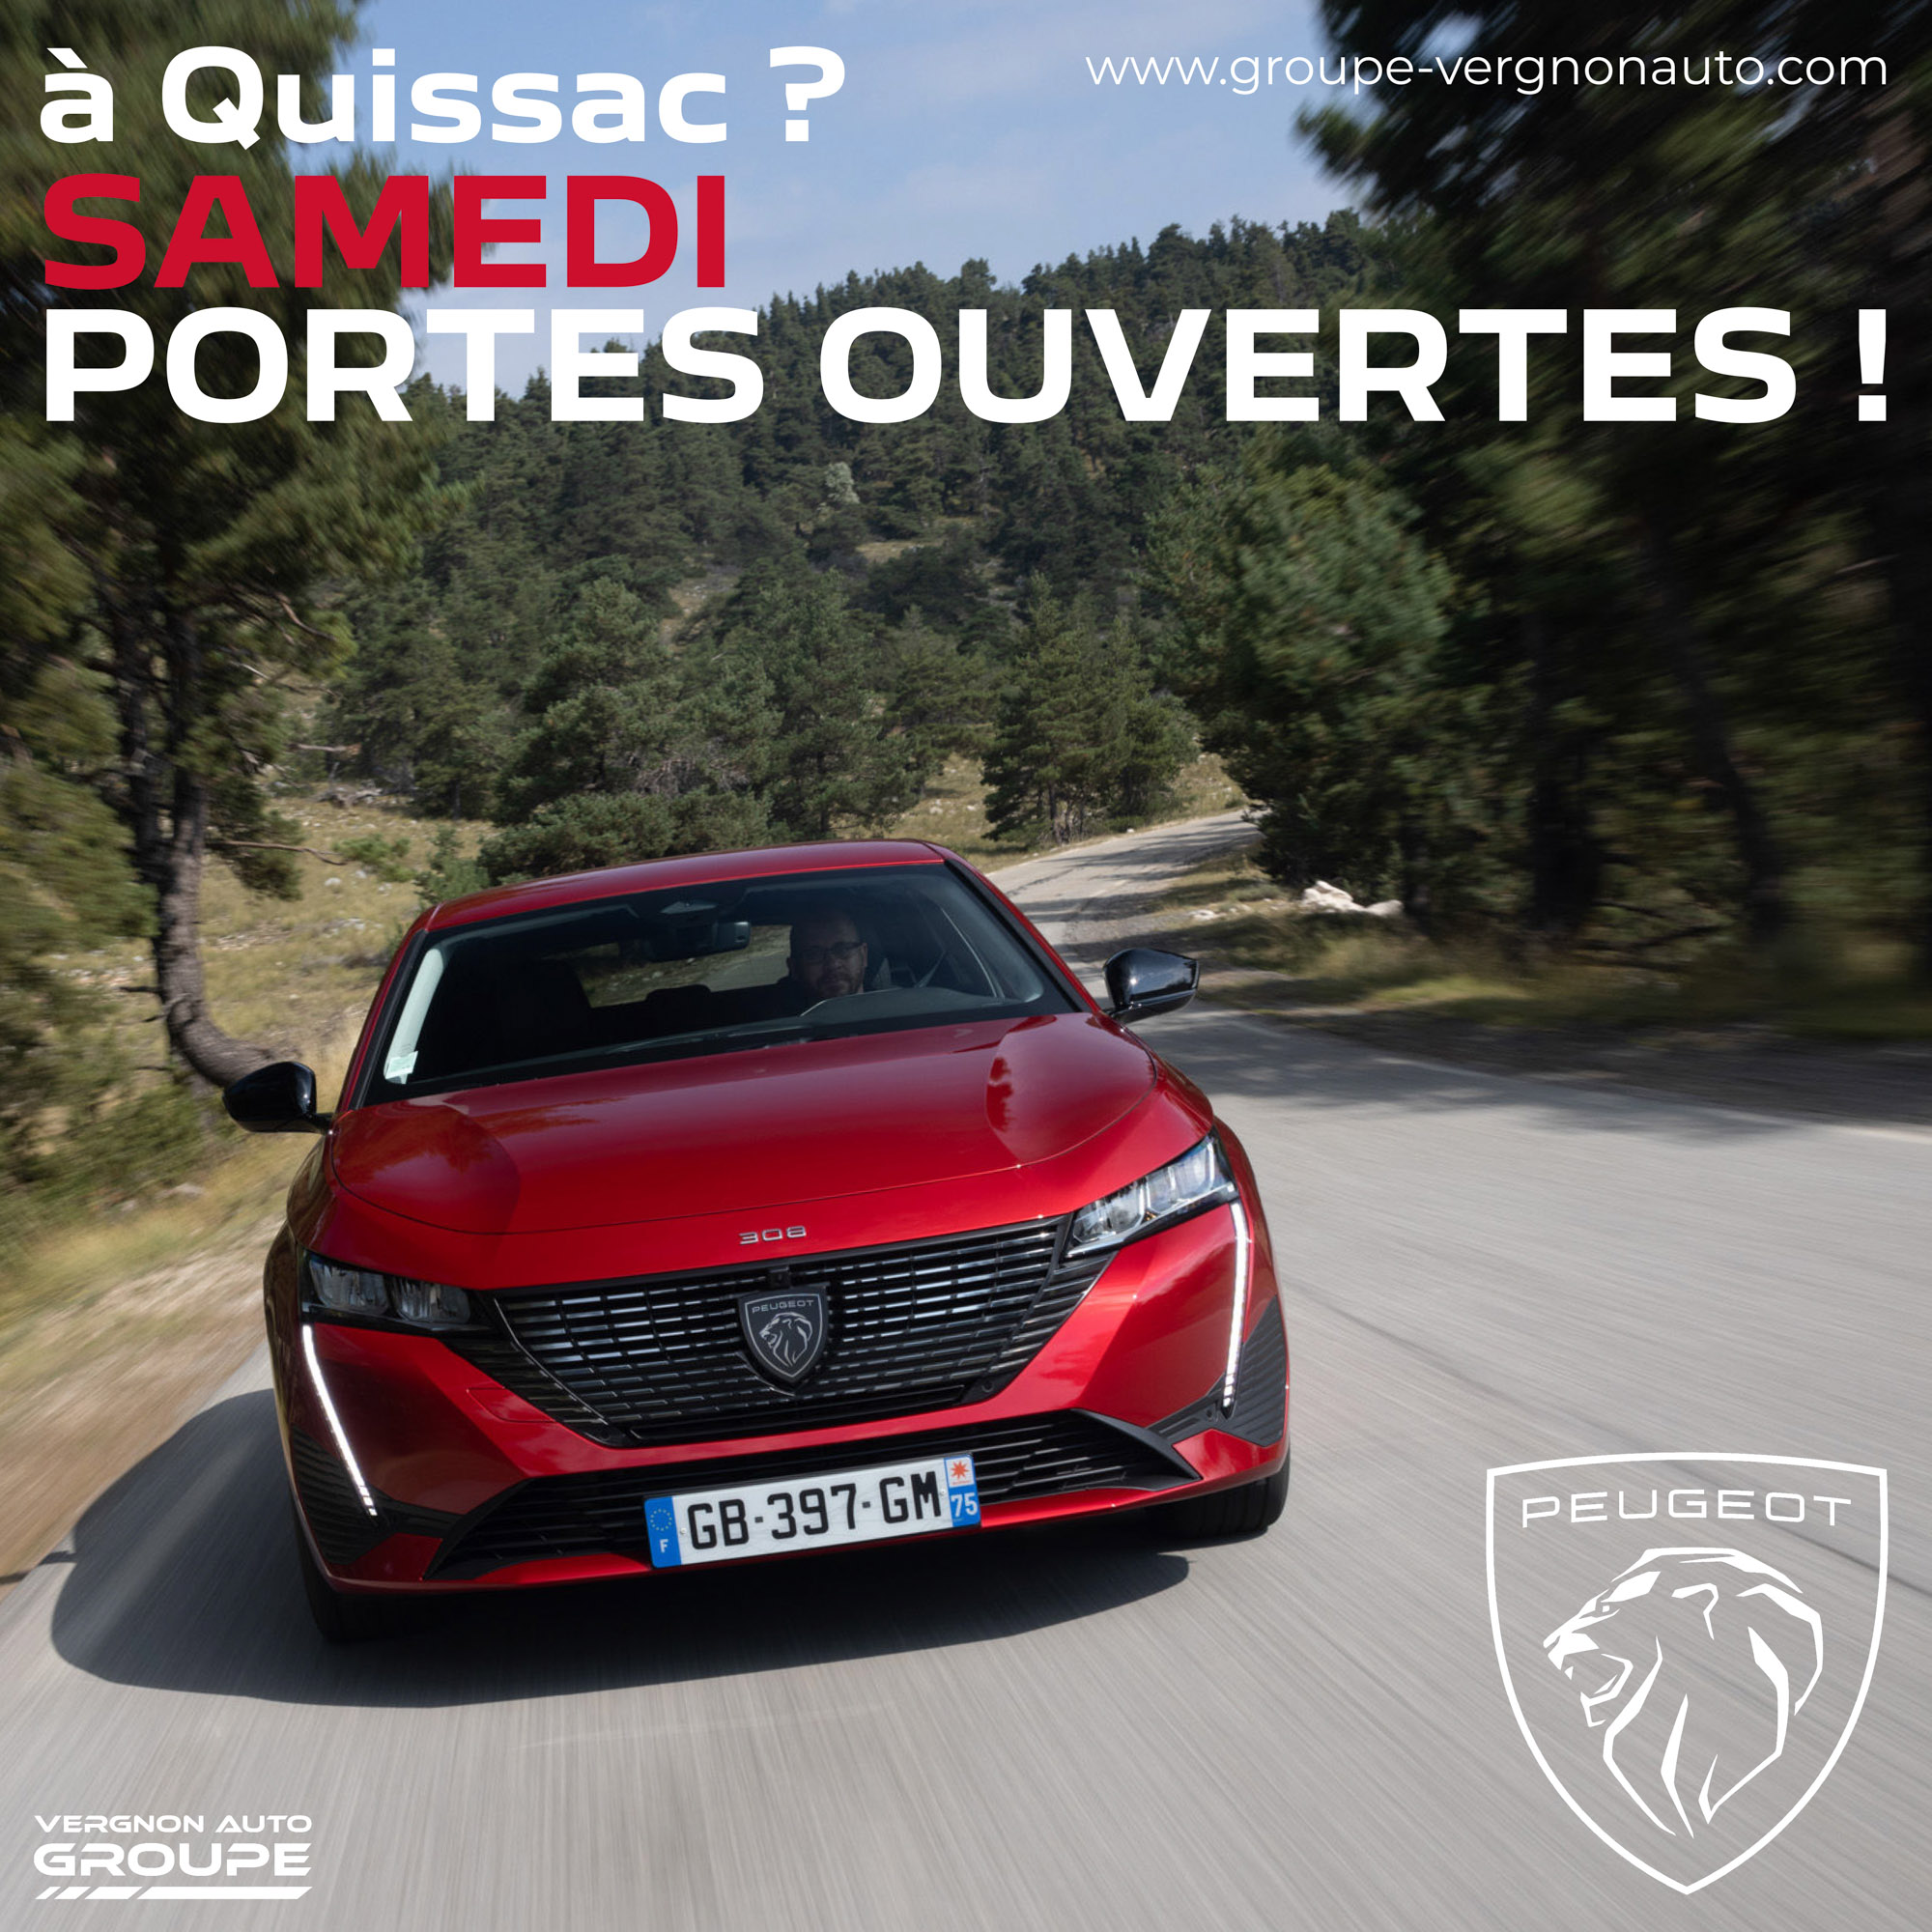 Samedi 12 mars ? C'est portes ouvertes Peugeot à Quissac, en Piémont cévenol, dans le Gard (30) !